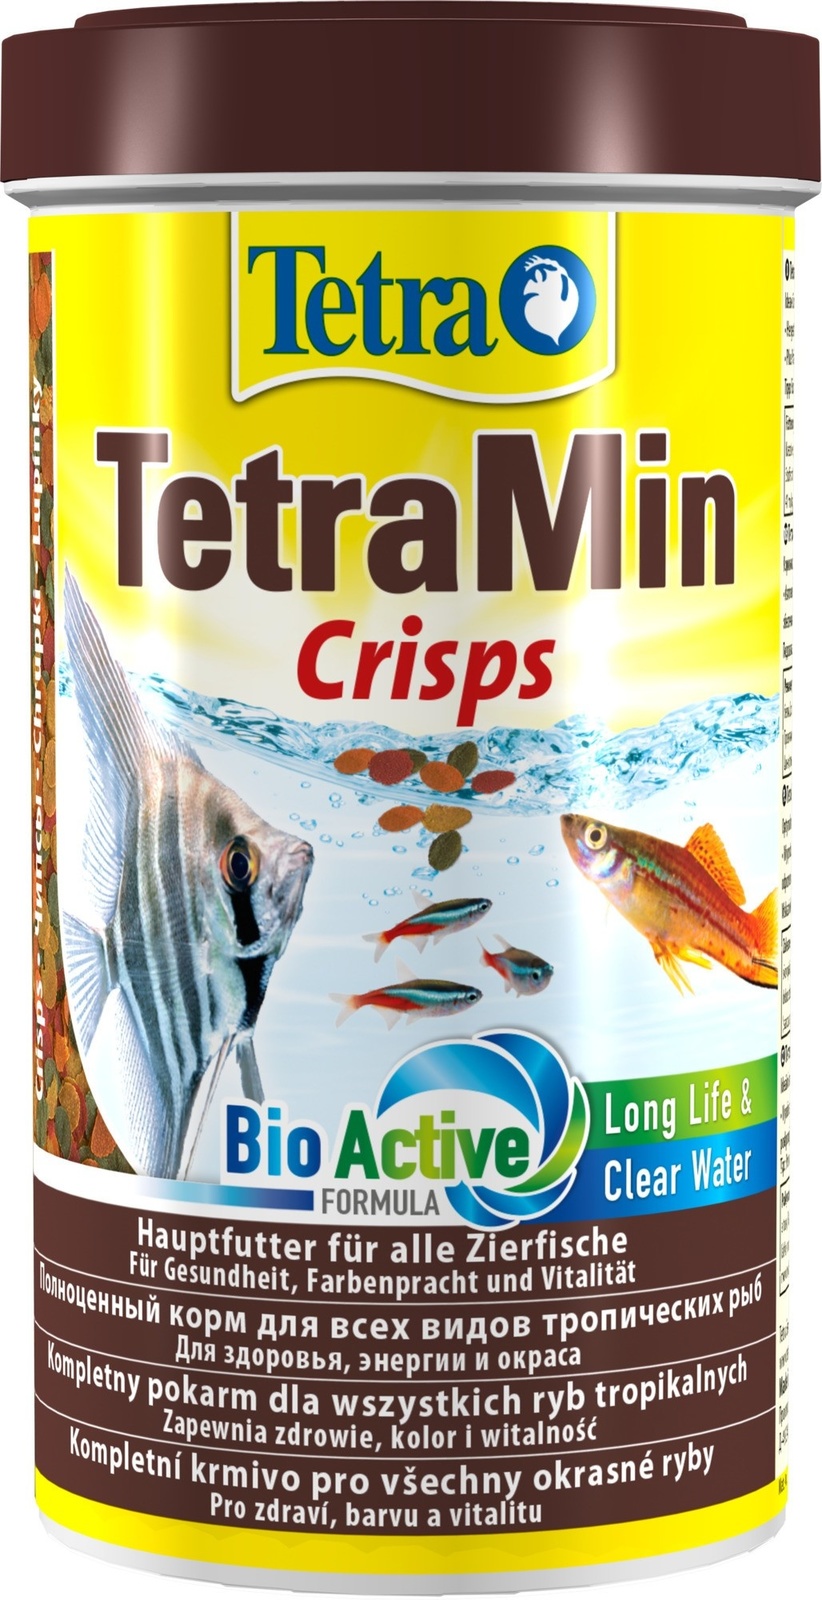 Tetra (корма) Tetra (корма) корм для всех видов тропических рыб, чипсы (110 г) tetra корма tetra корма корм для всех видов рыб хлопья 12 г